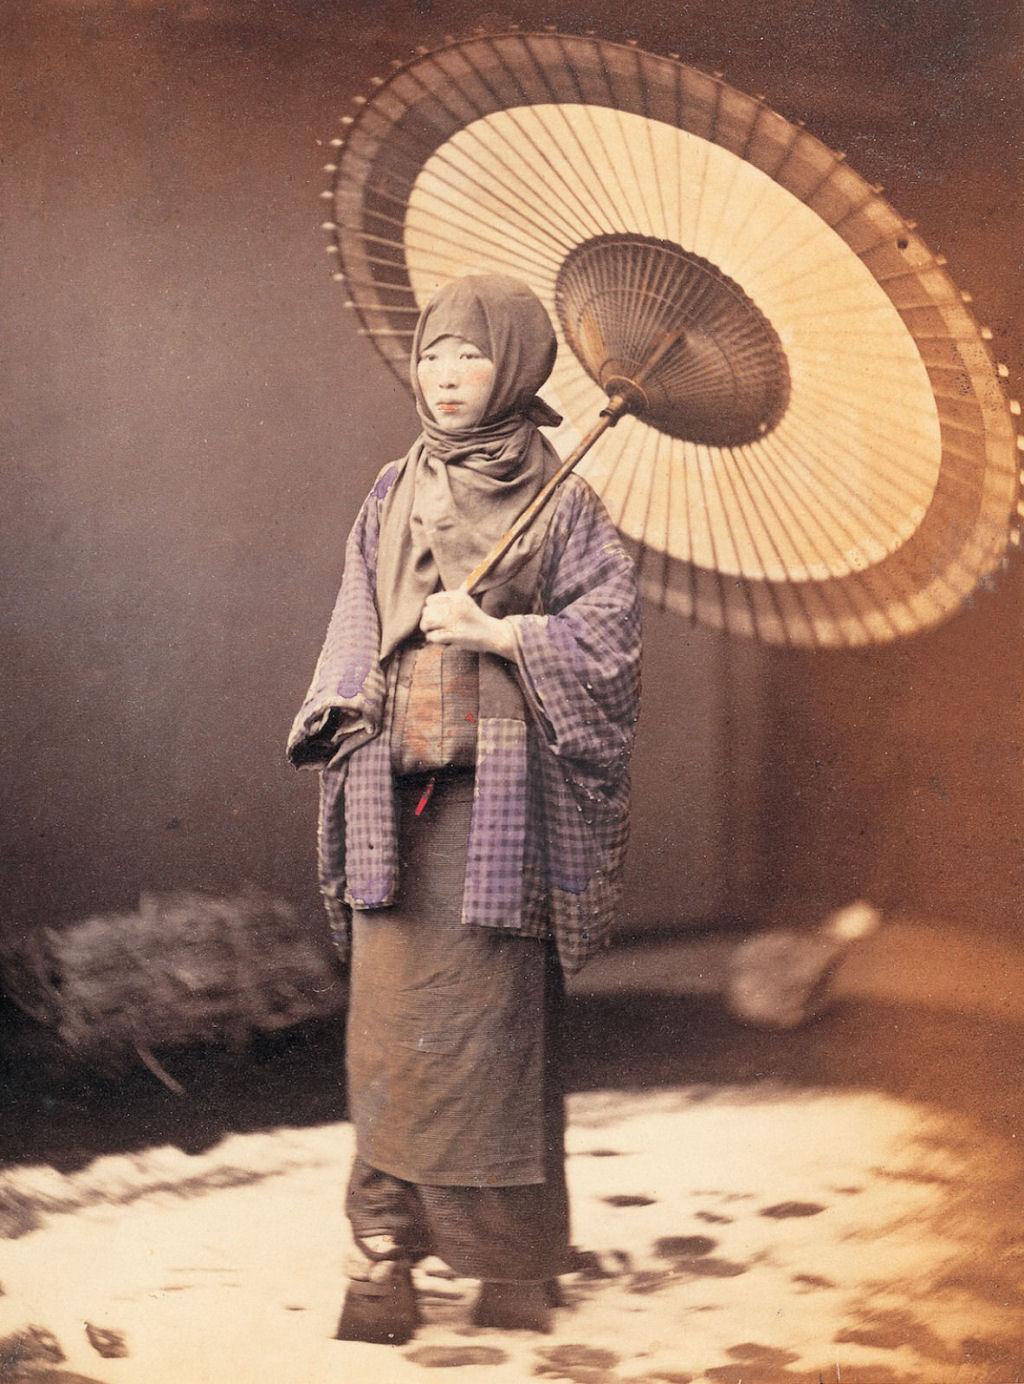 A vida e as tradies do Japo do sculo XIX em fotos colorizadas  mo 17